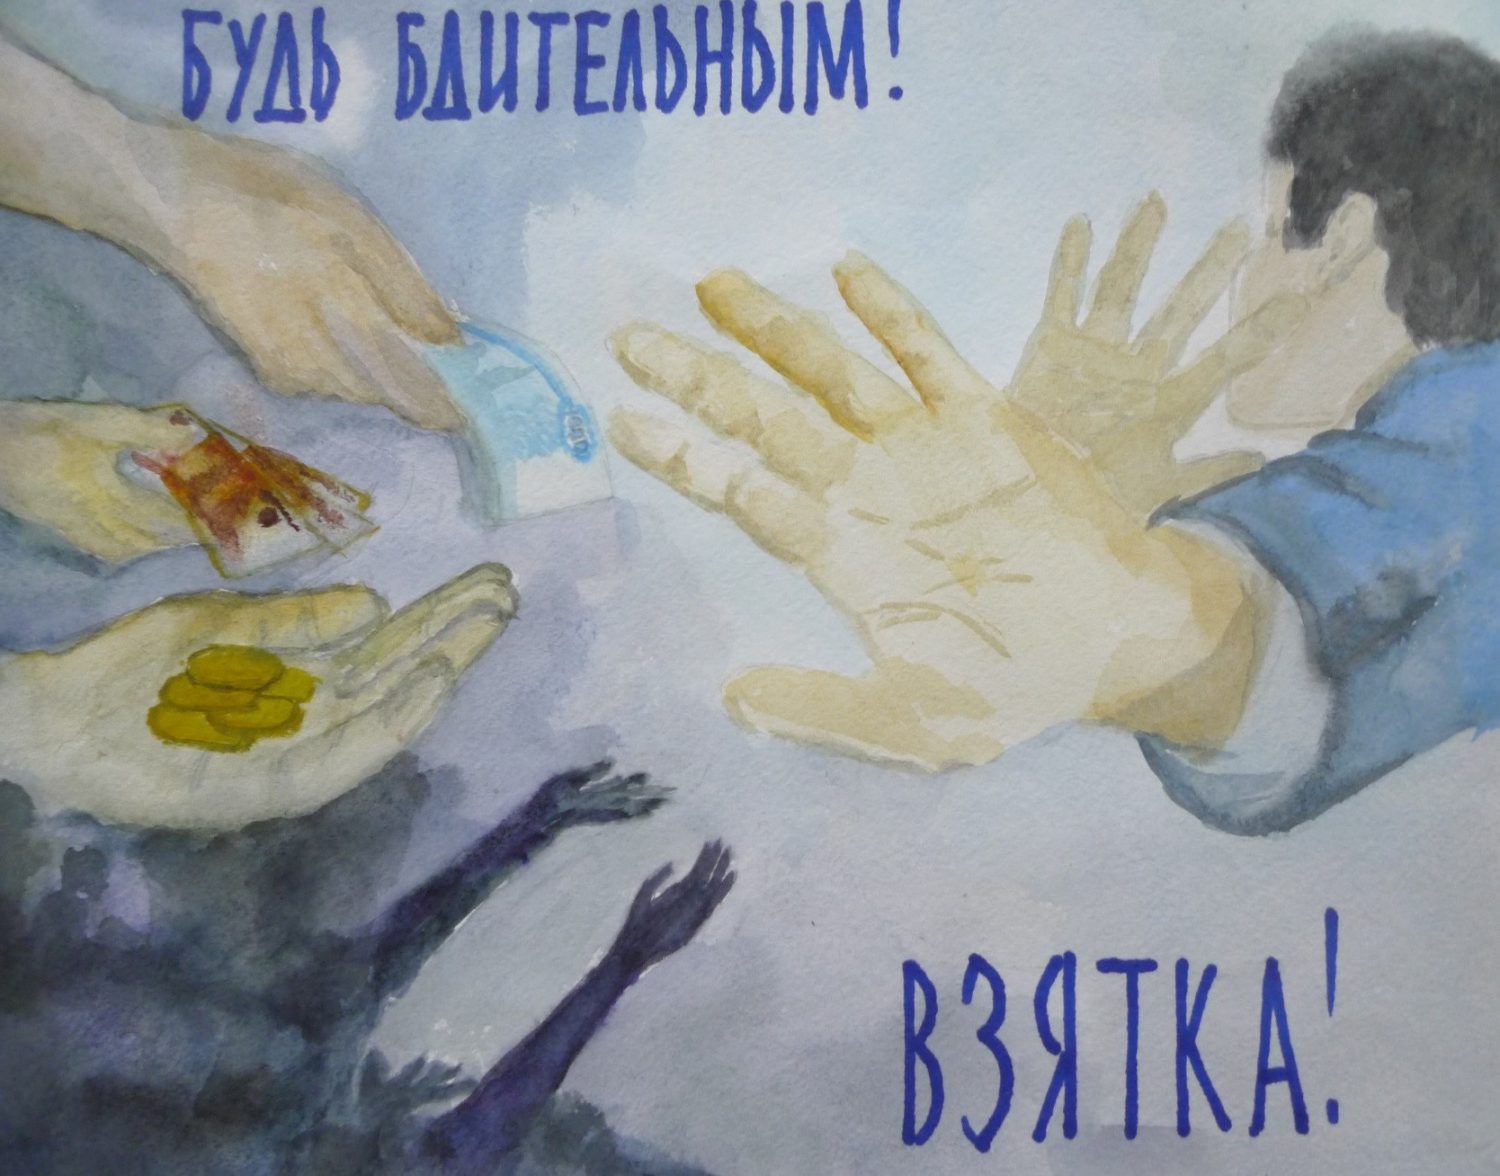 Плакат чистые руки против коррупции